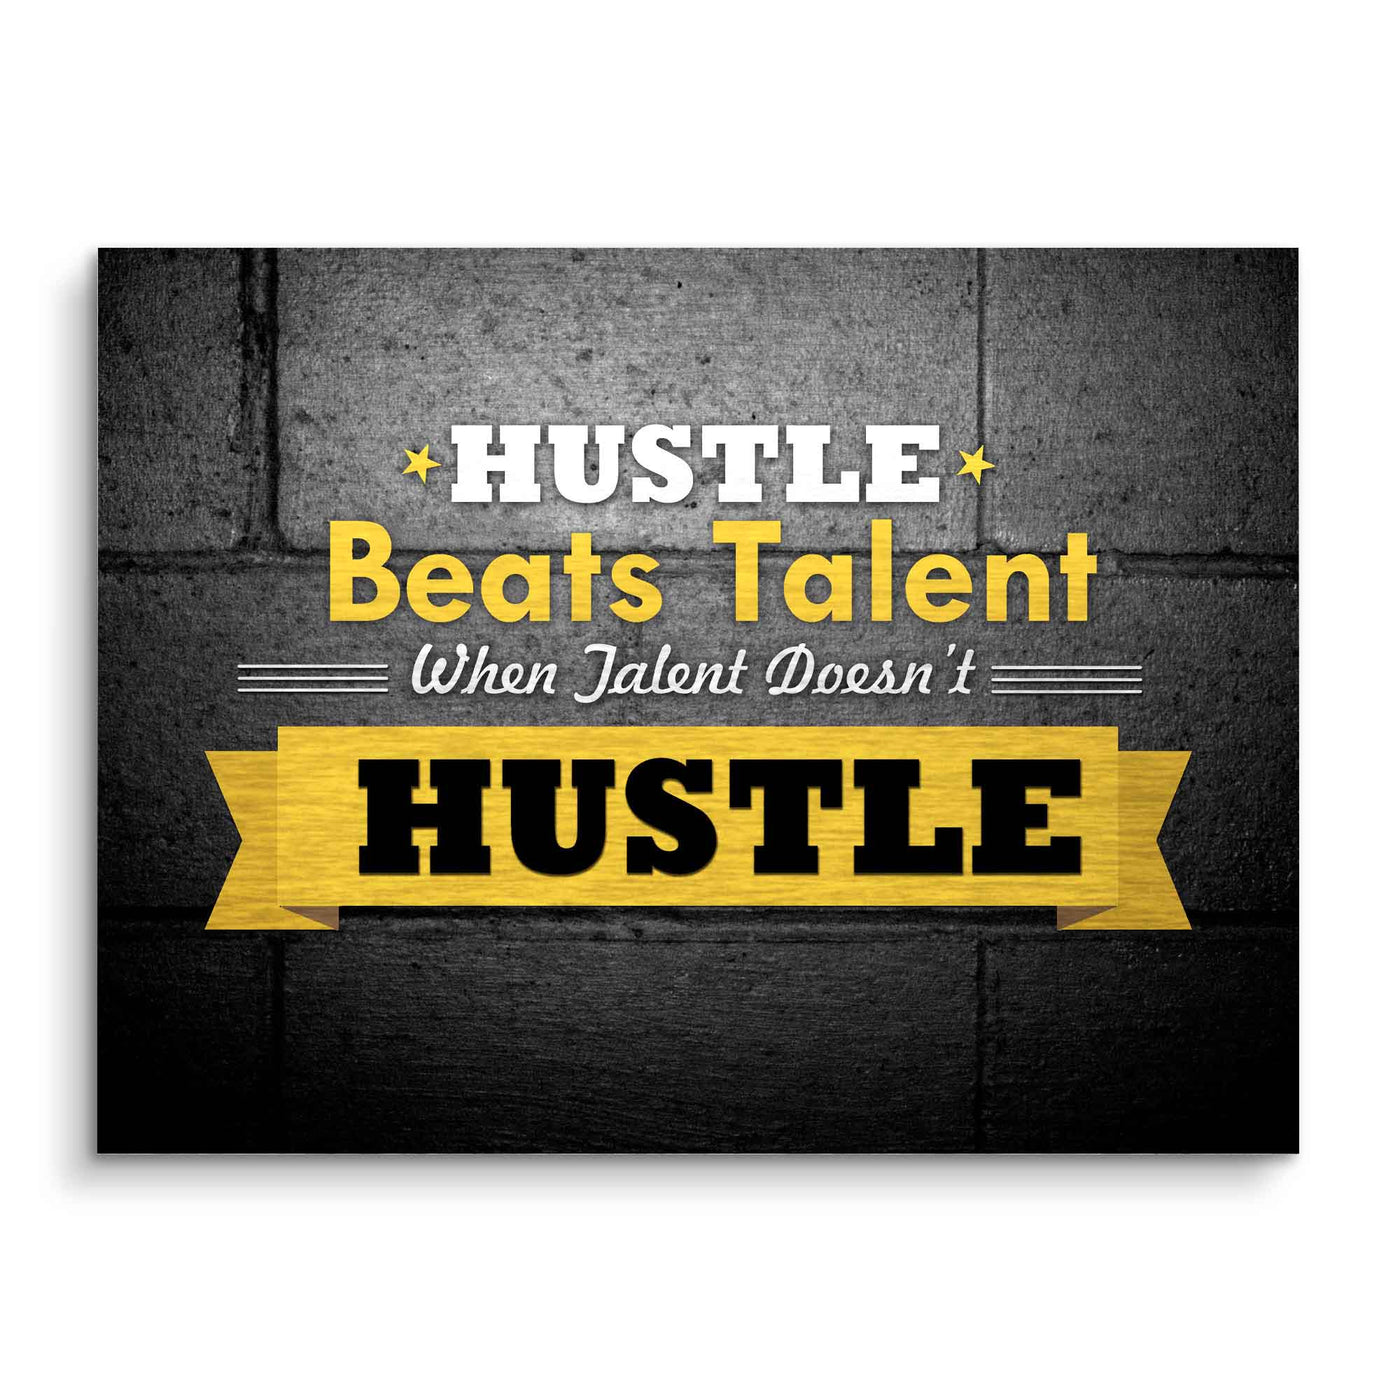 Hustle beats